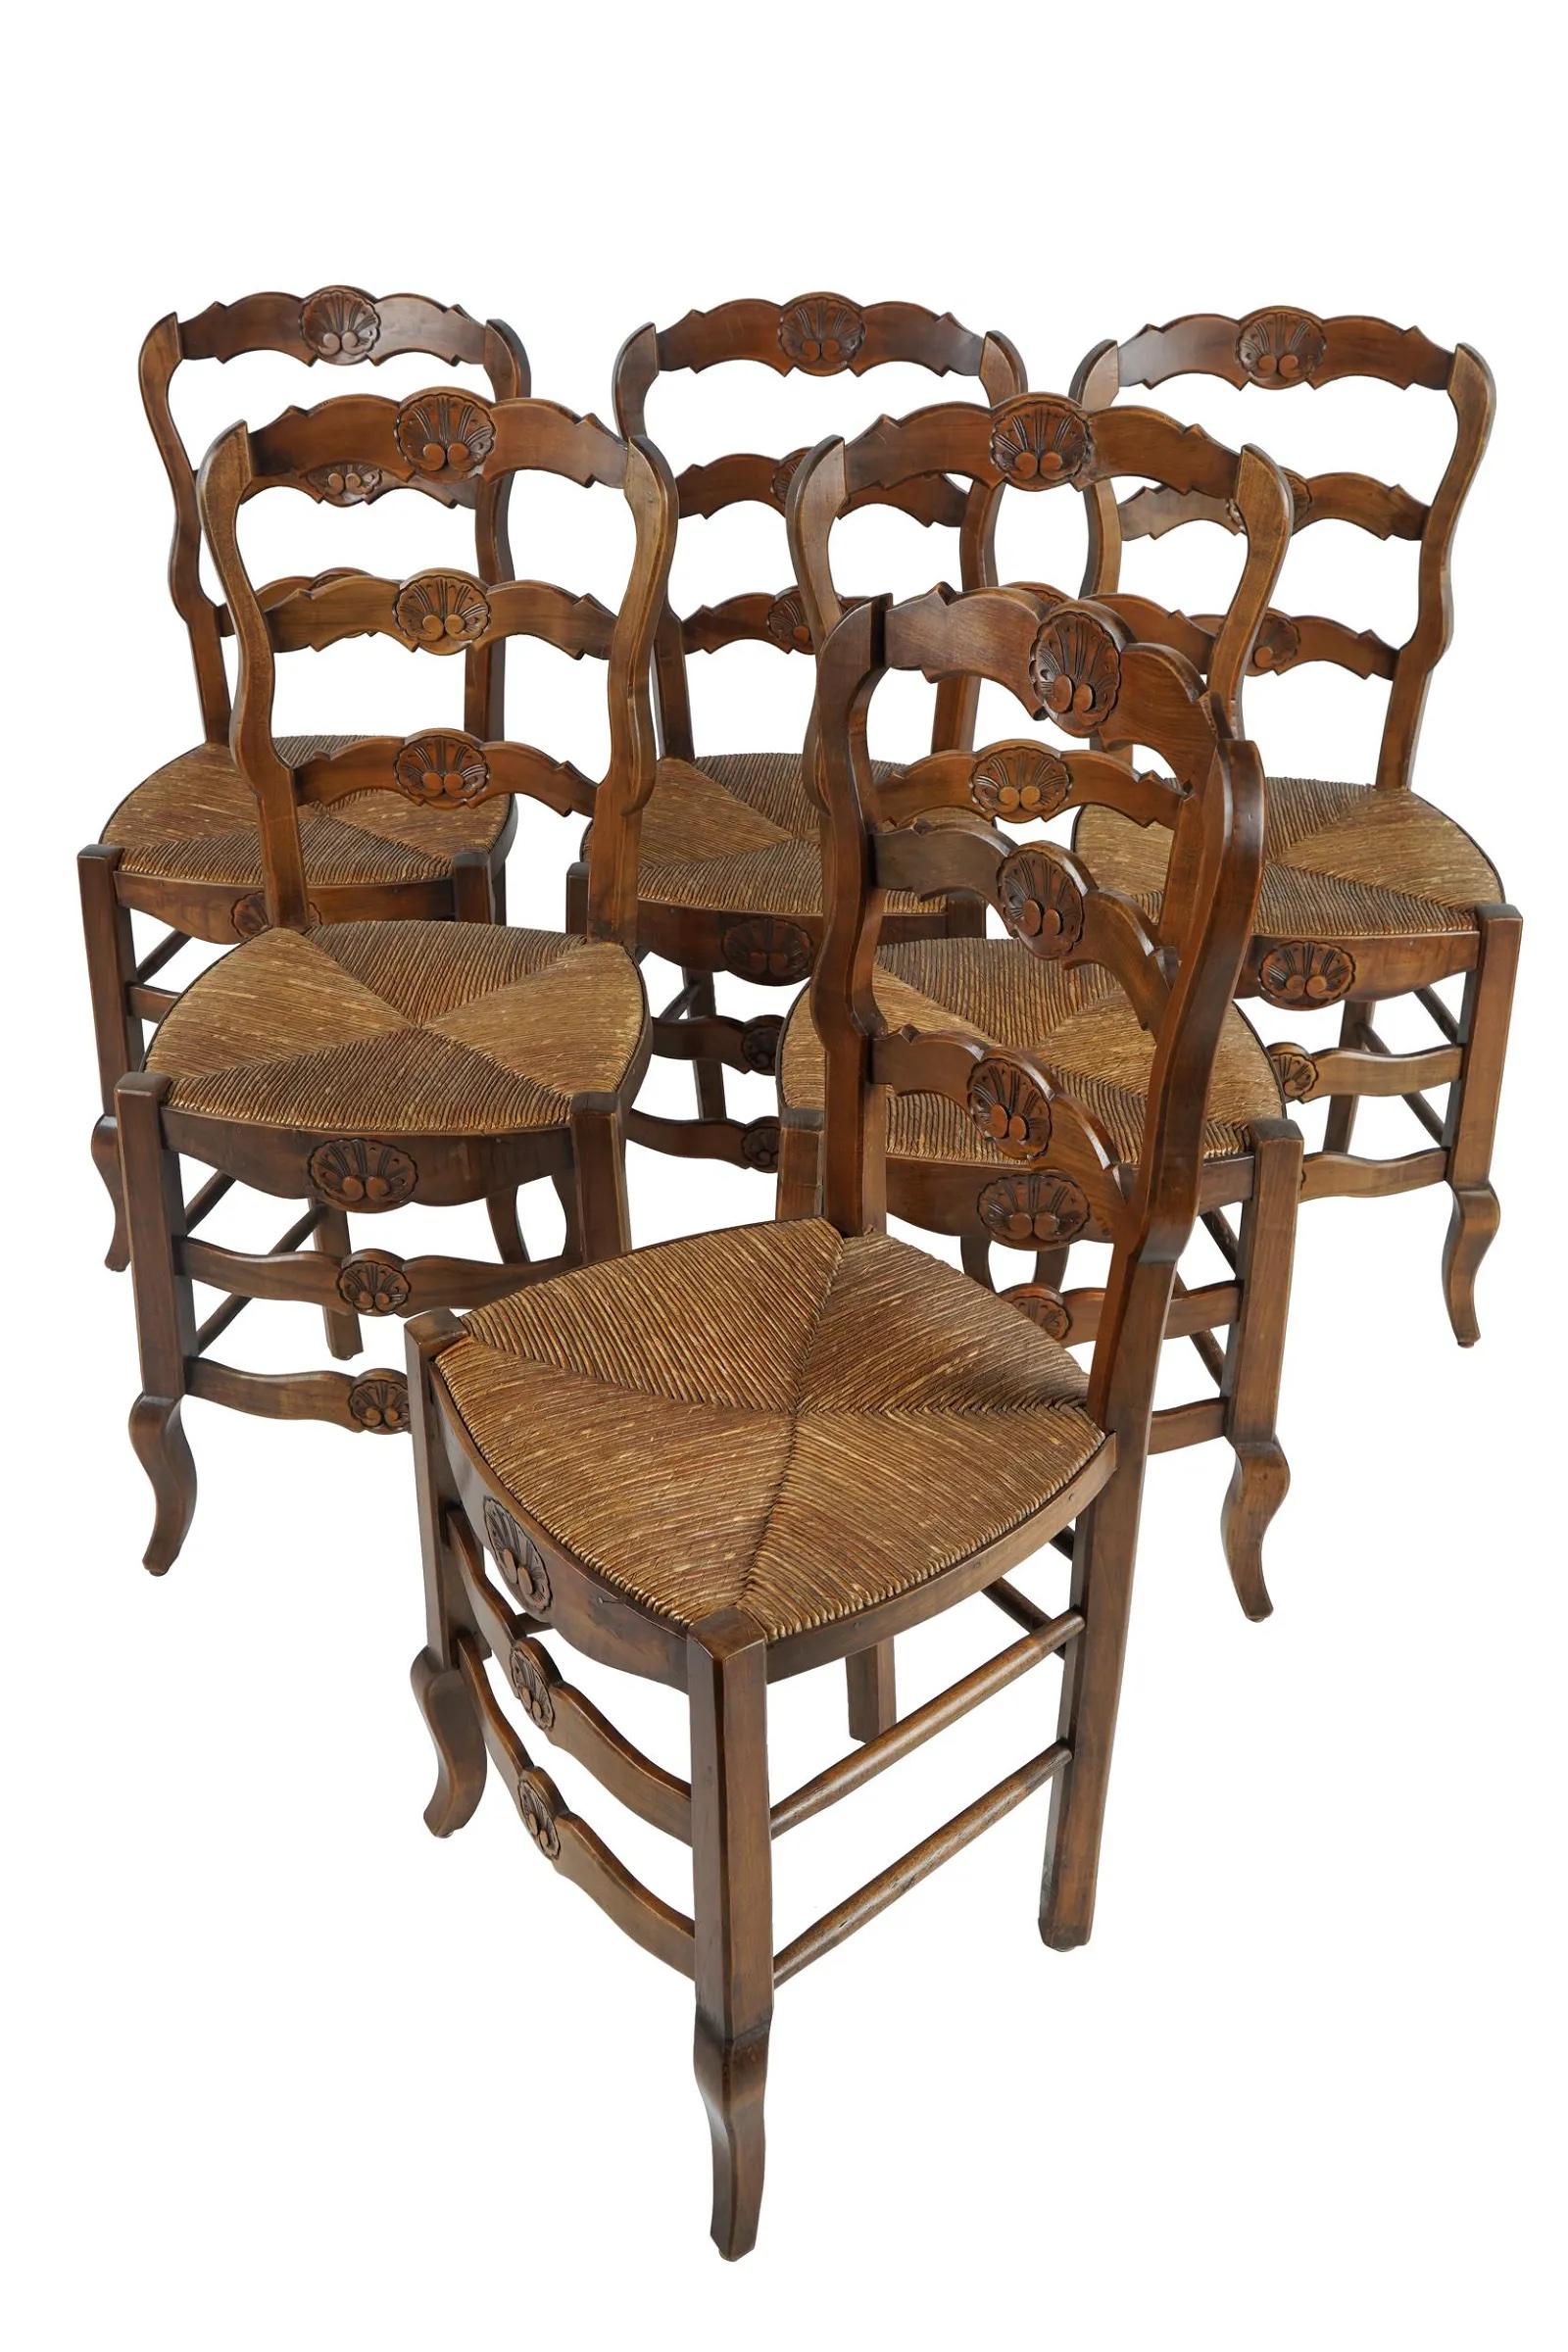 Ensemble de six chaises de salle à manger en hêtre sculpté de style provincial français, avec sièges en jonc tissé à la main, milieu du 19e siècle. Fabriqué en France